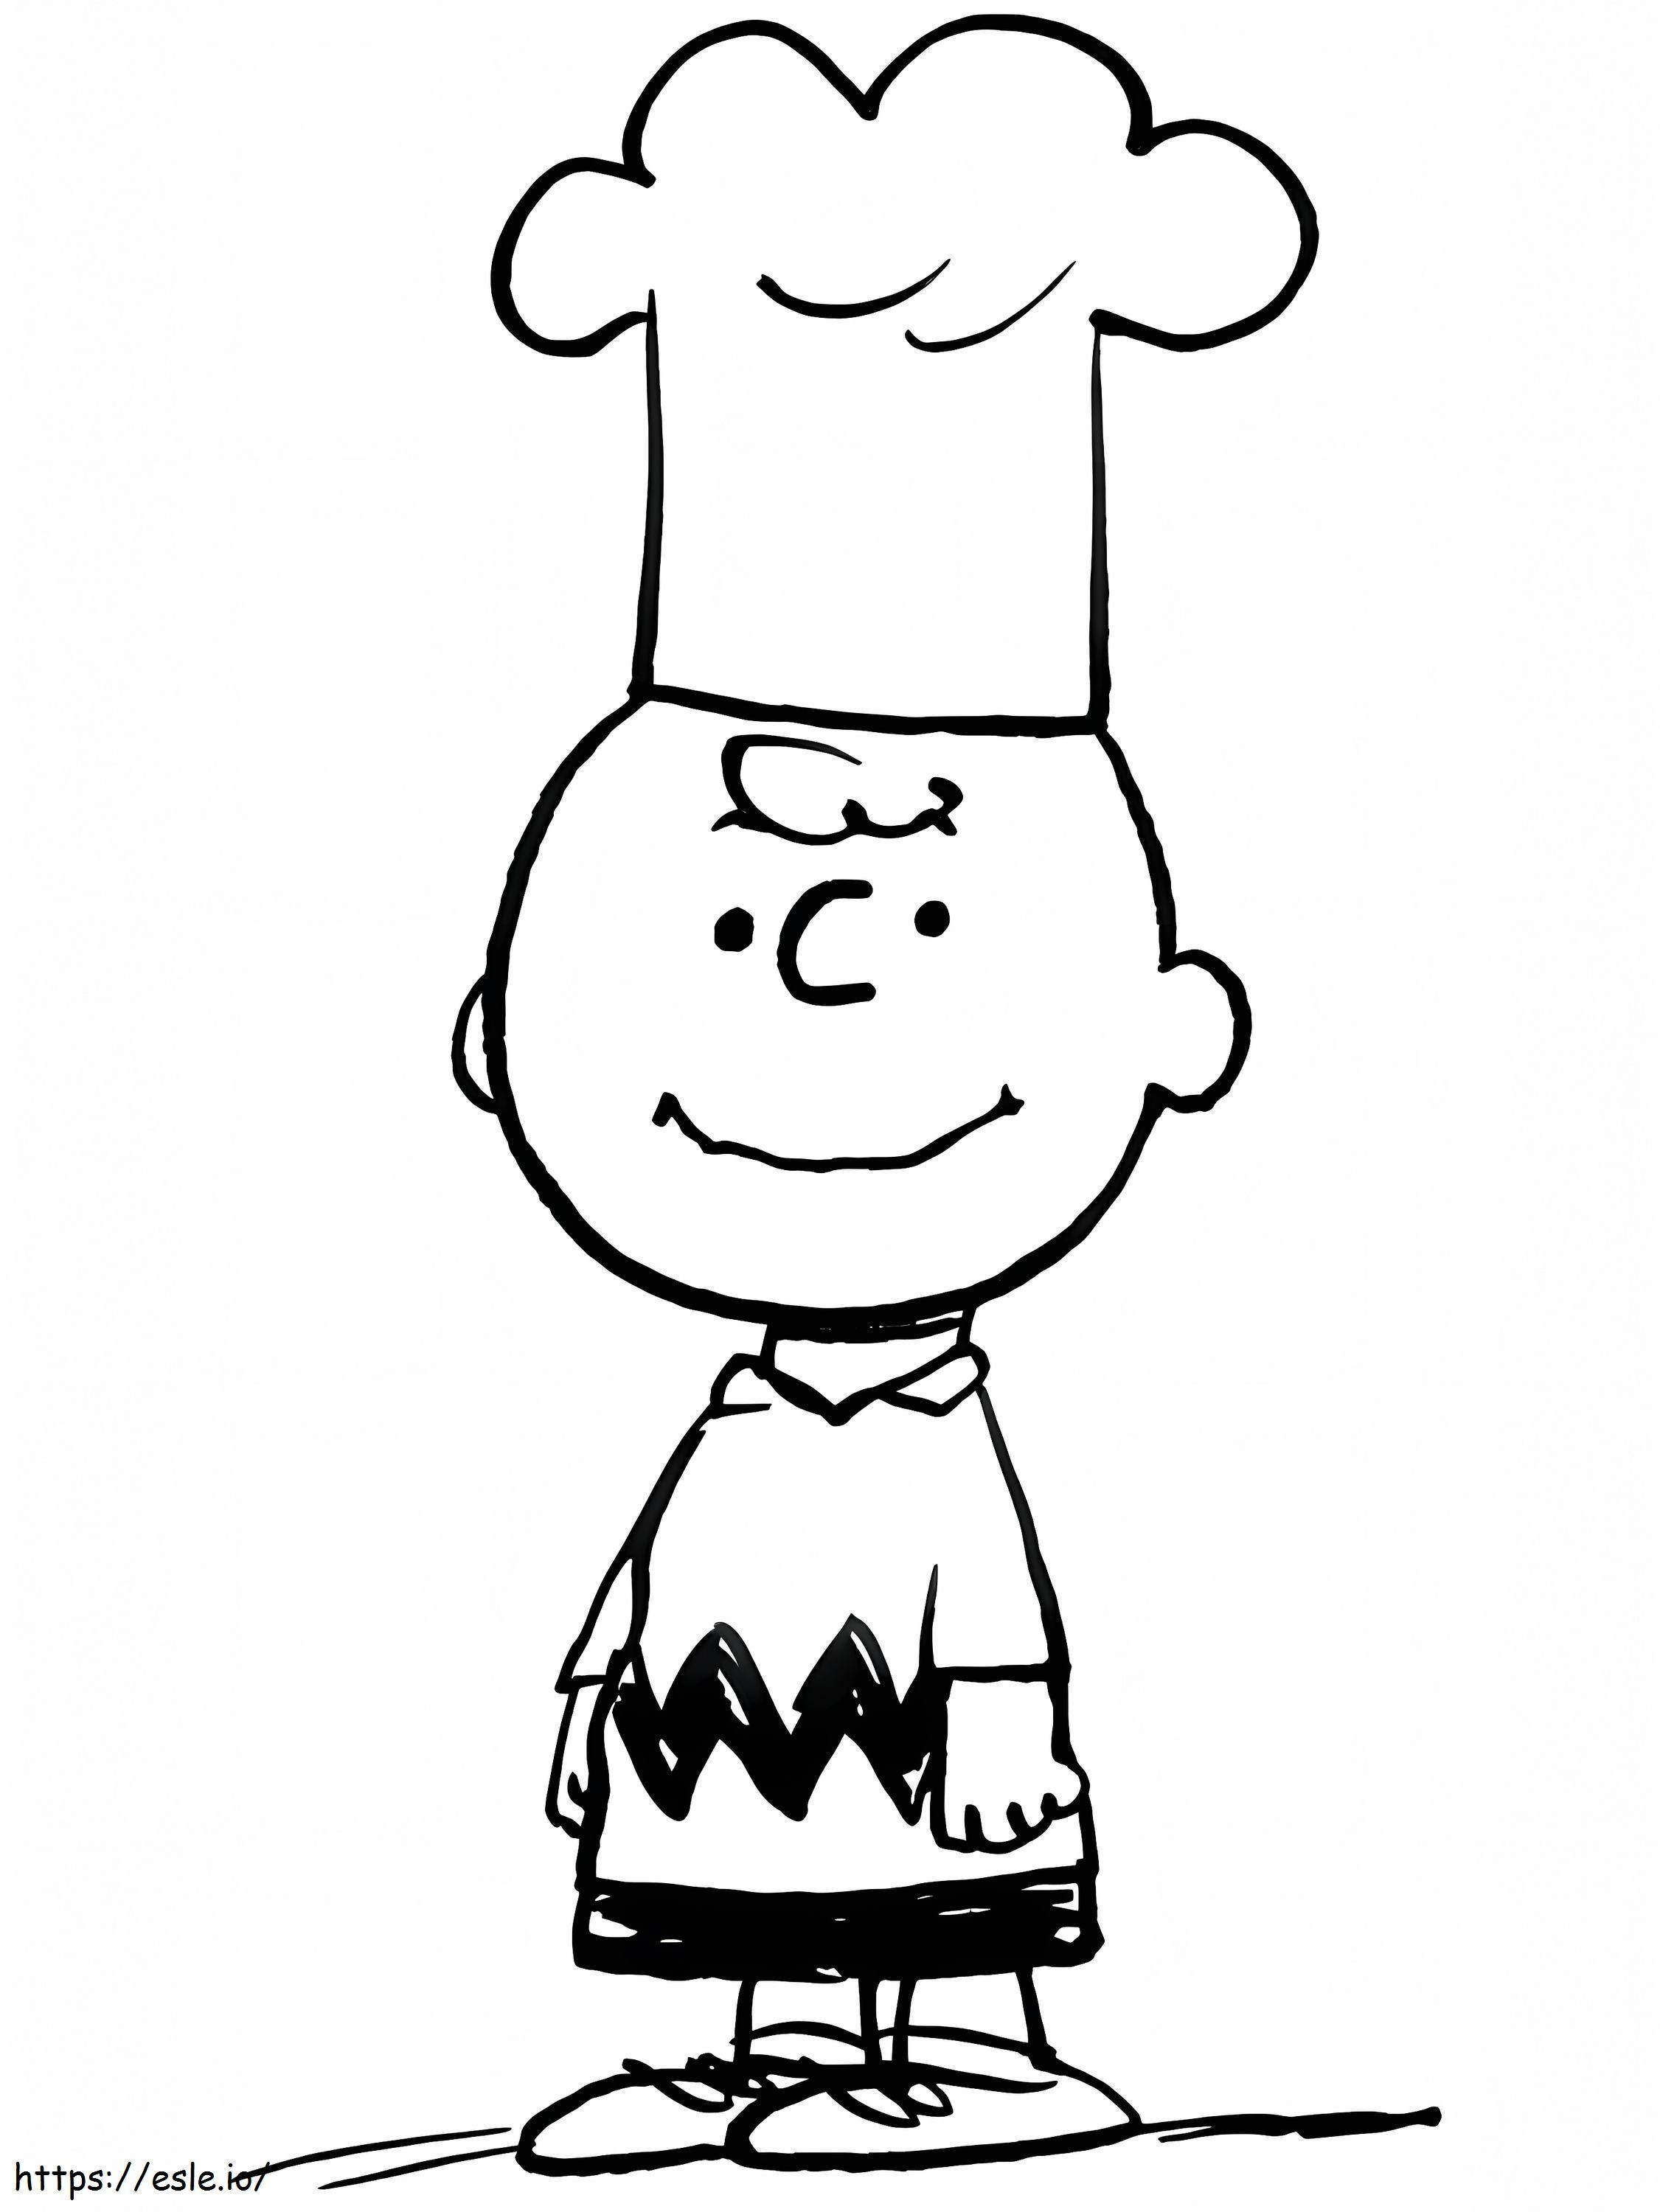 Chef-kok Charlie Brown kleurplaat kleurplaat